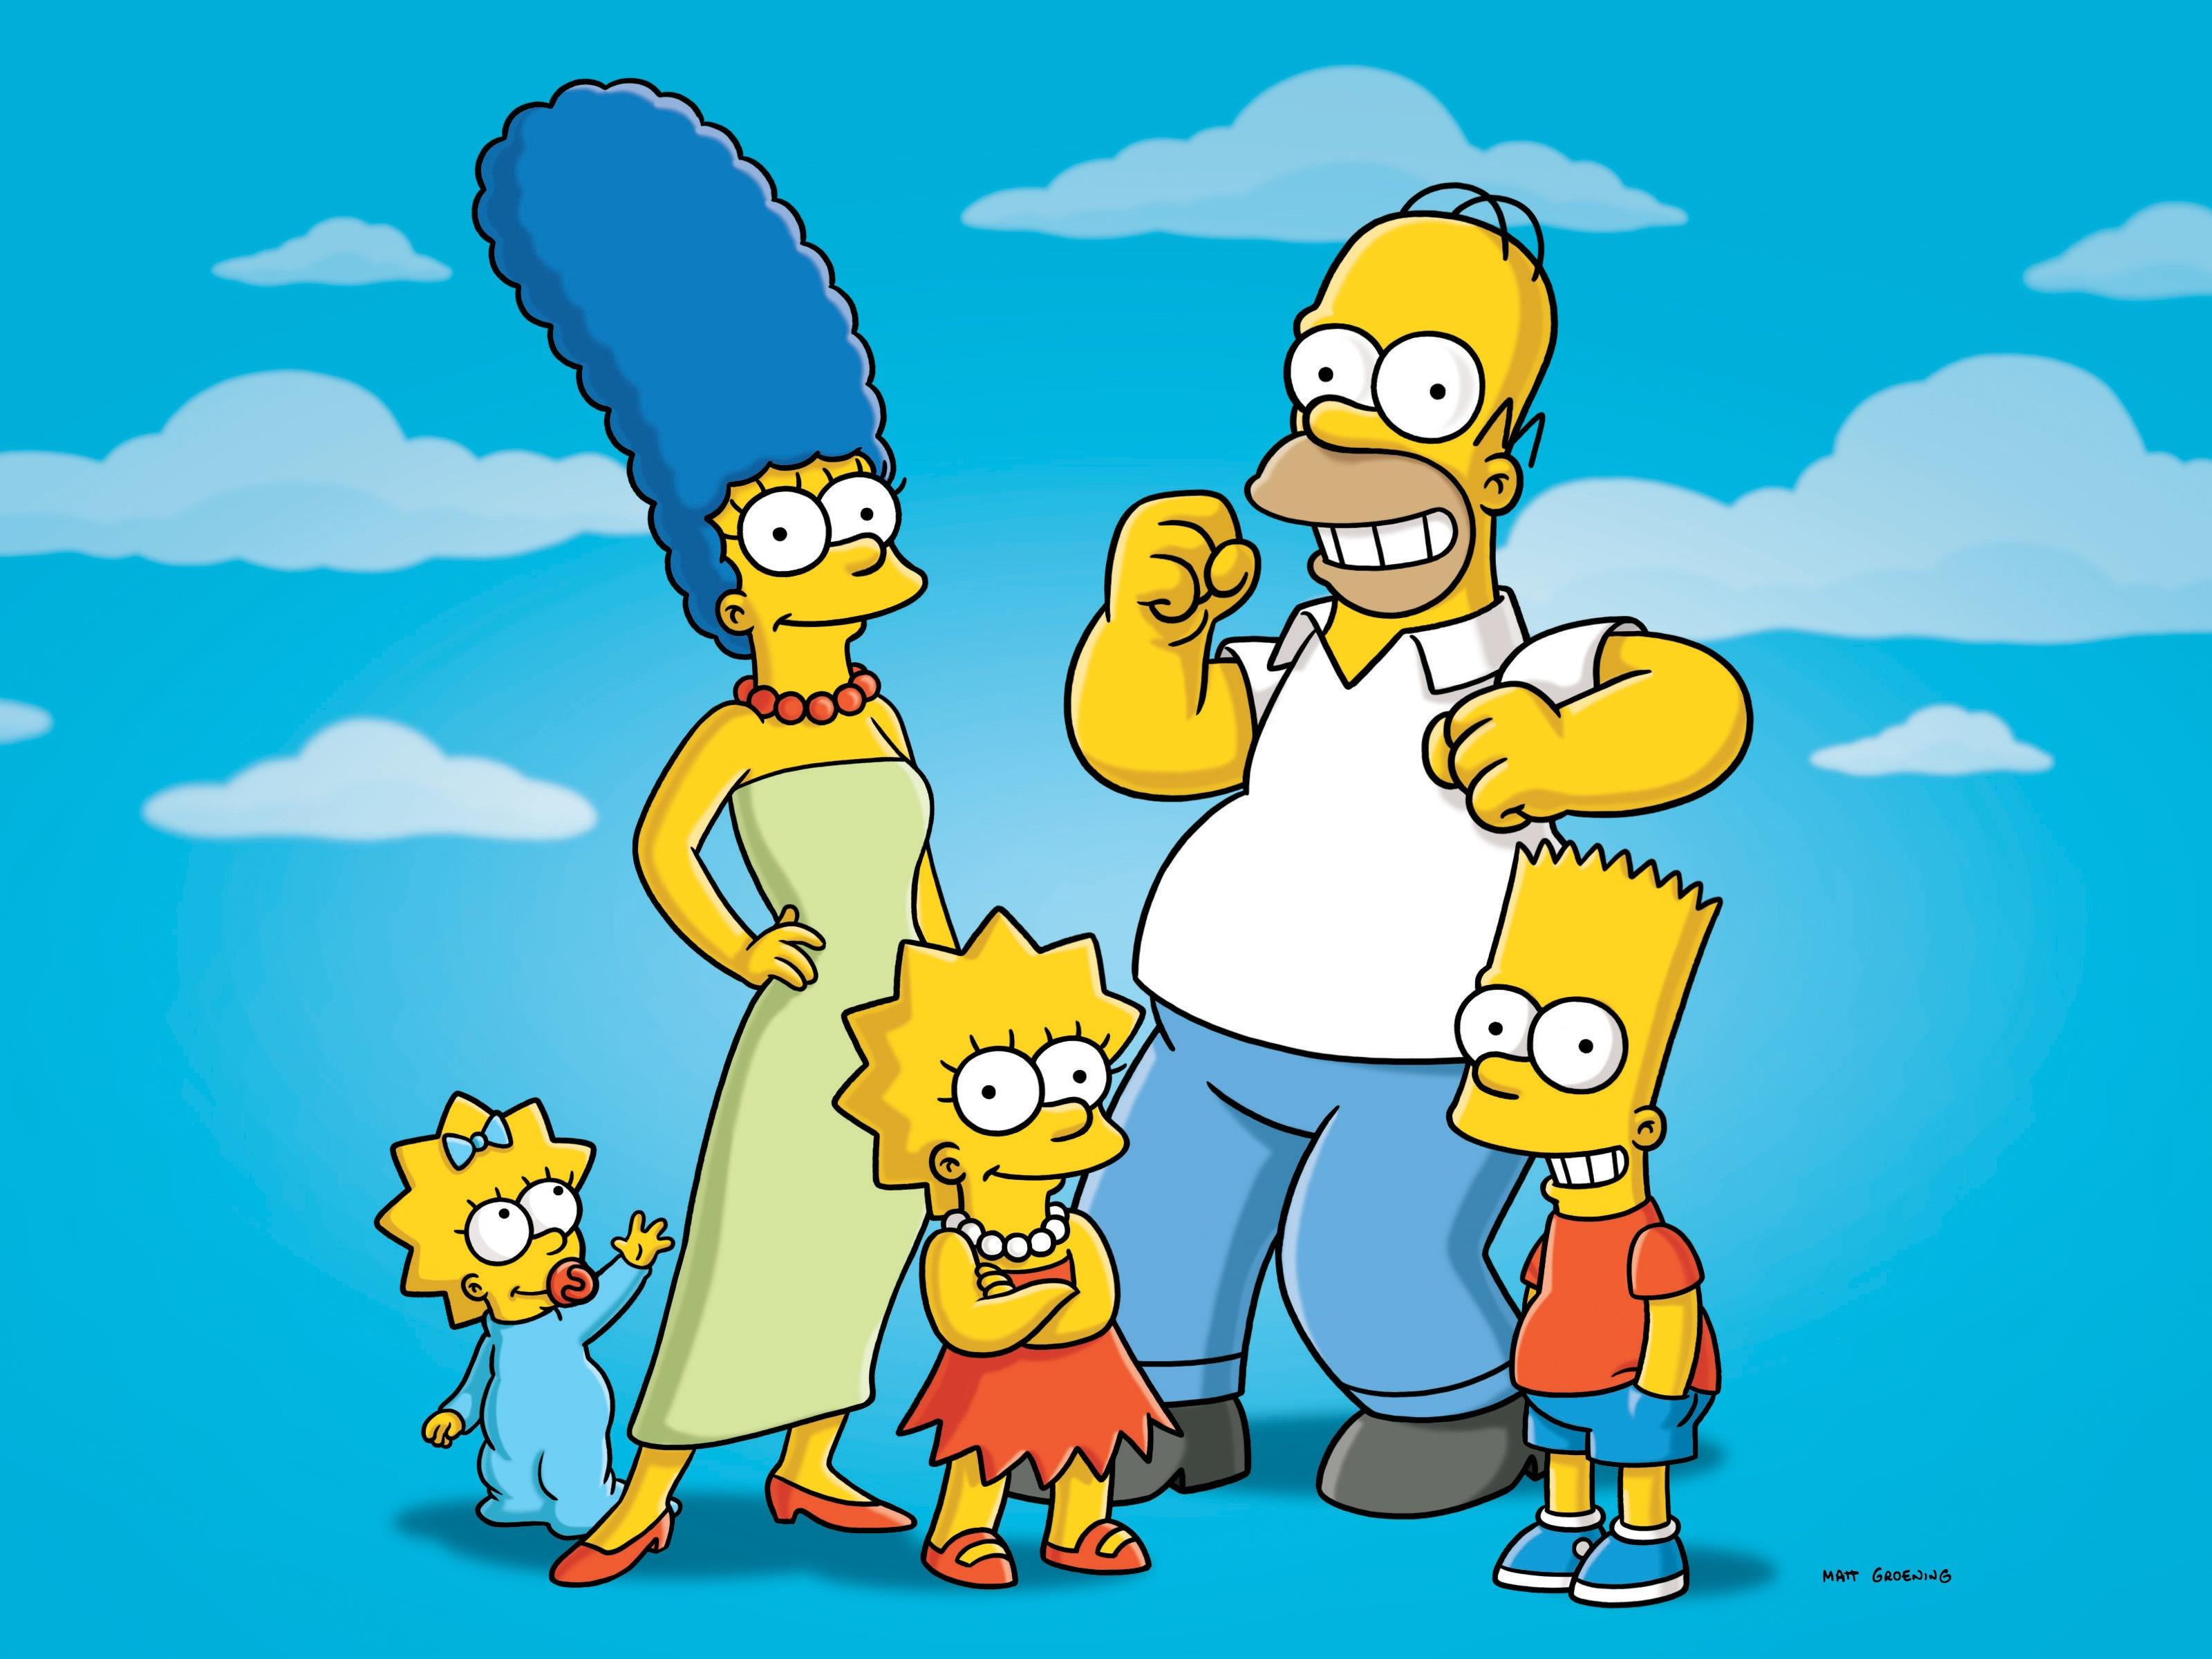 Die Simpsons prophezeiten schon 2000 die Wahl-Sieg von Donald Trump.